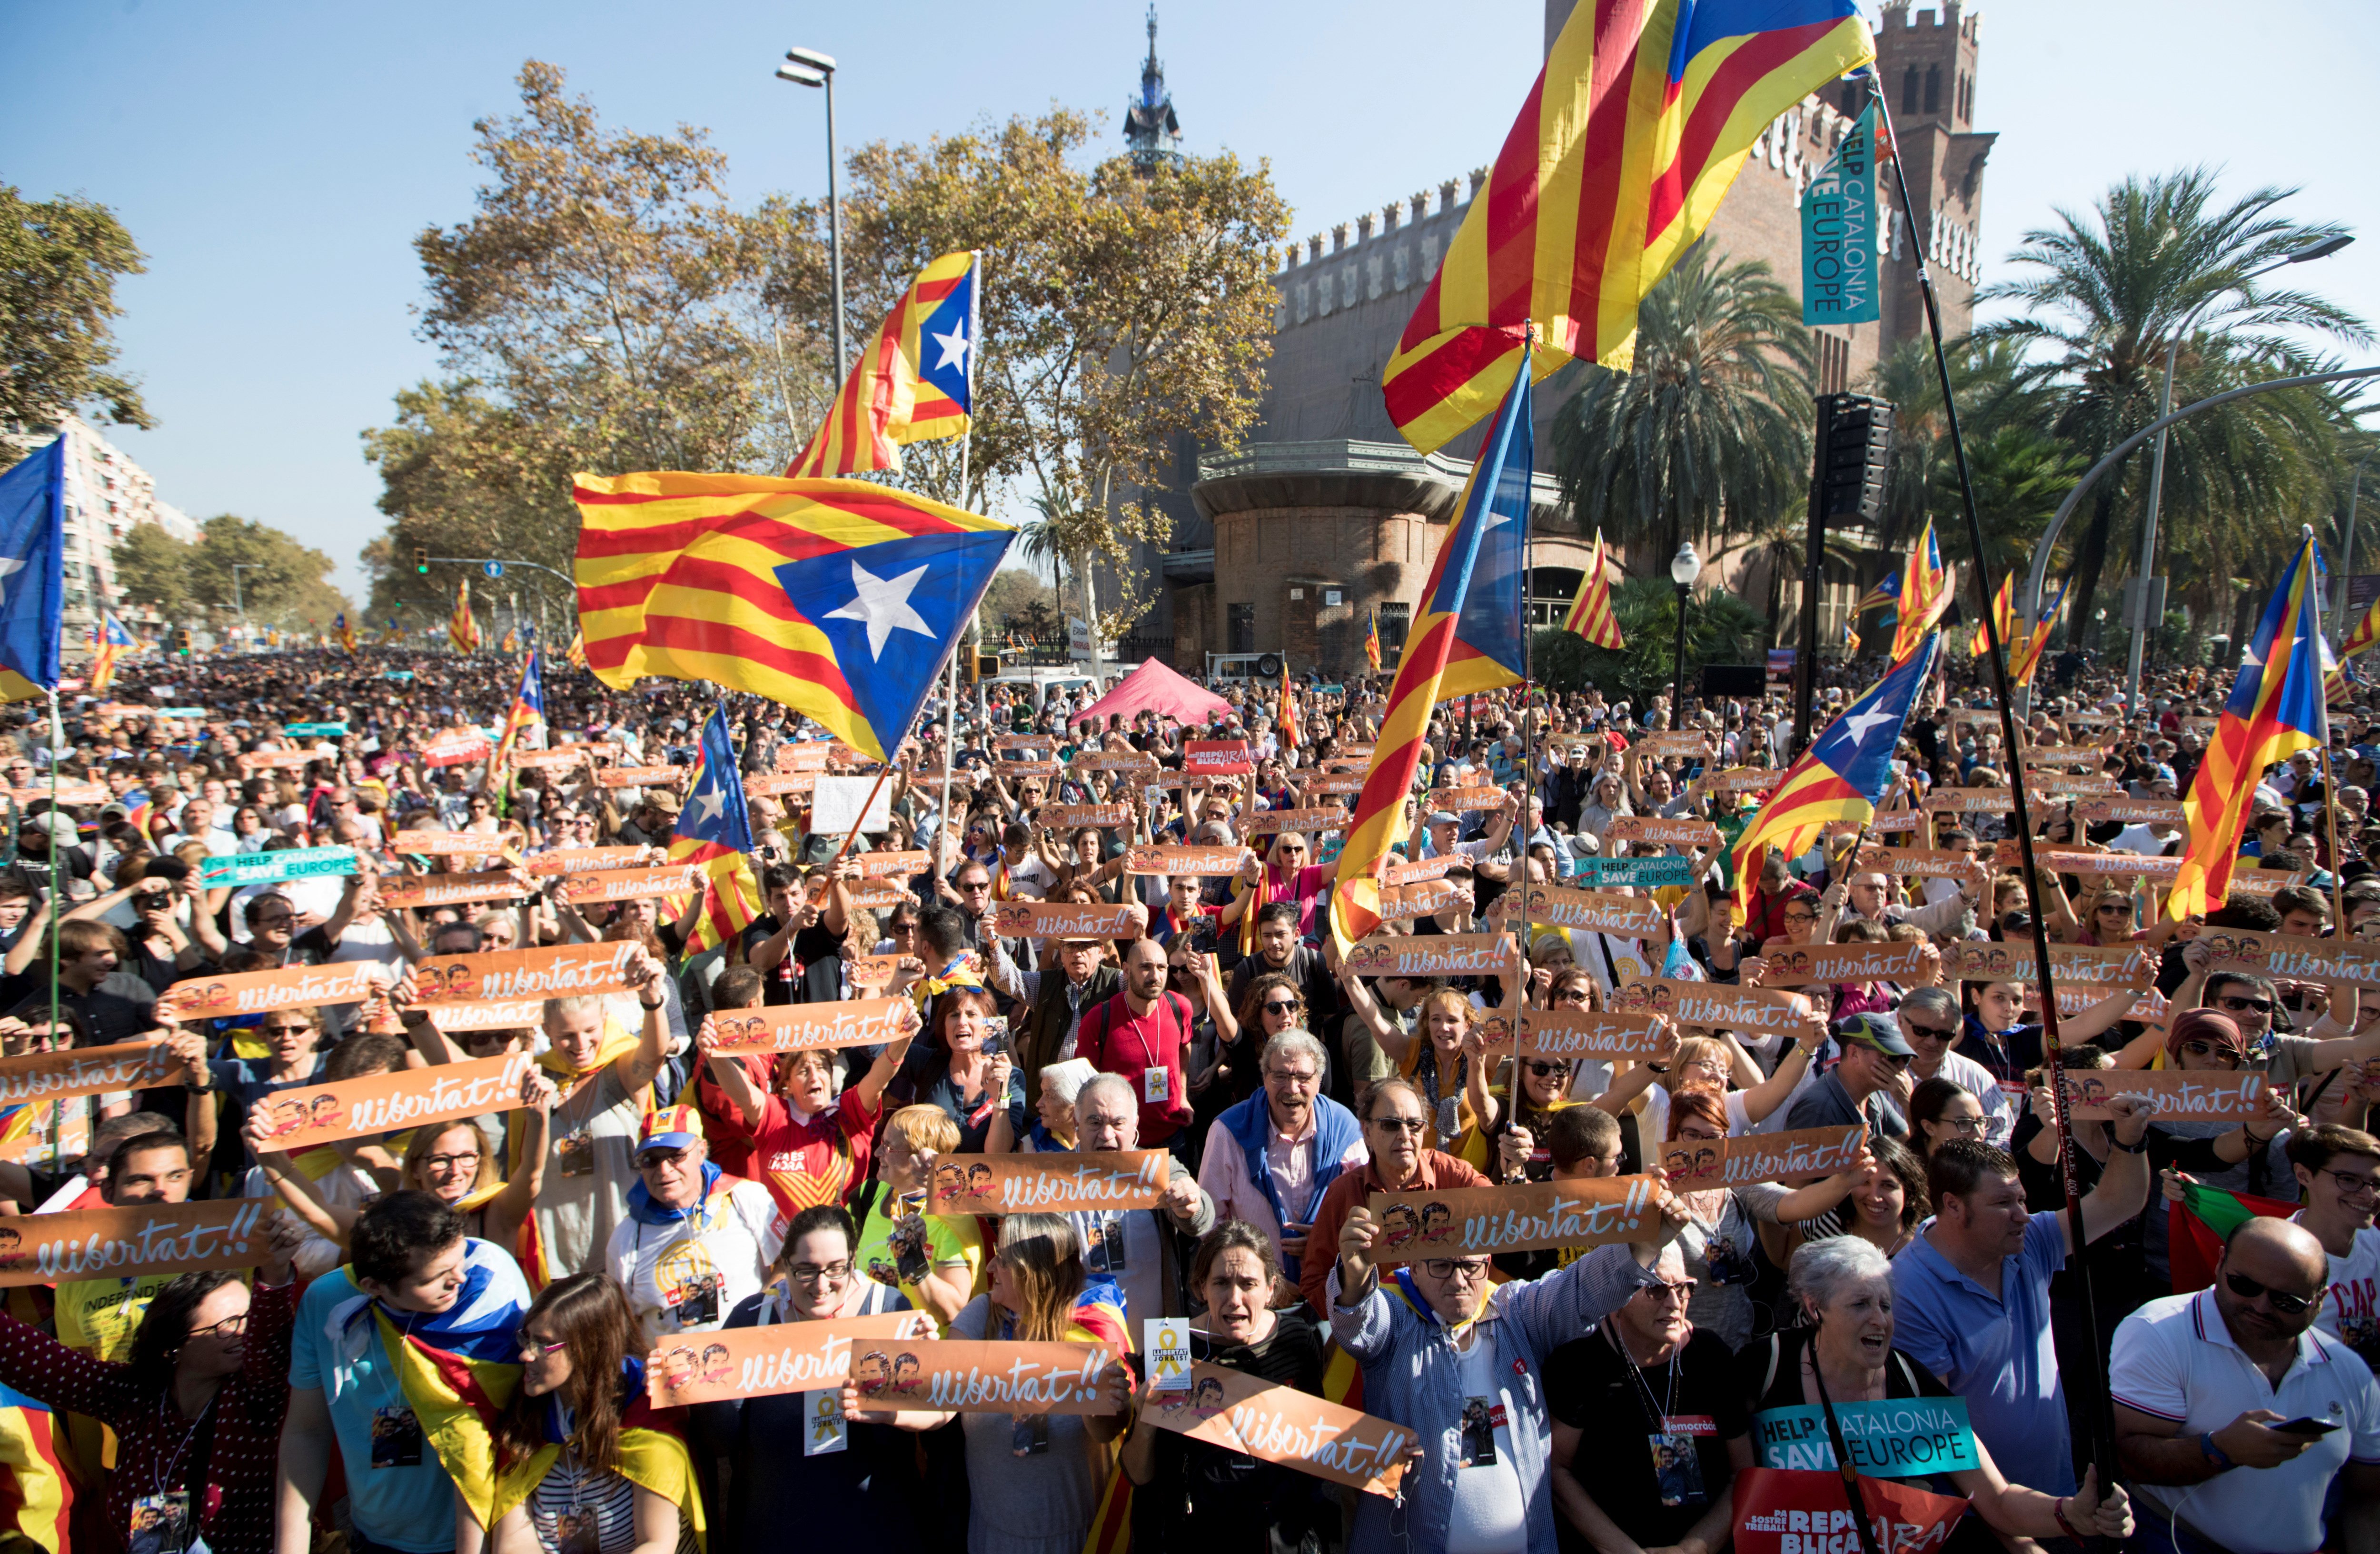 Днес регионалният парламент на Каталуния одобри обявяването на независимост от Испания с тайно гласуване. „Установяваме Каталунската република, независима и суверенна държава под върховенството на закона”, гласи текста на гласуваната резолюция. Испания веднага отвърна с прилагането на член 155 от Конституцията, с който се отнема автономията на областта. Междувременно хиляди хора по улиците на Барселона празнуваха акта за независимост на Каталуния.